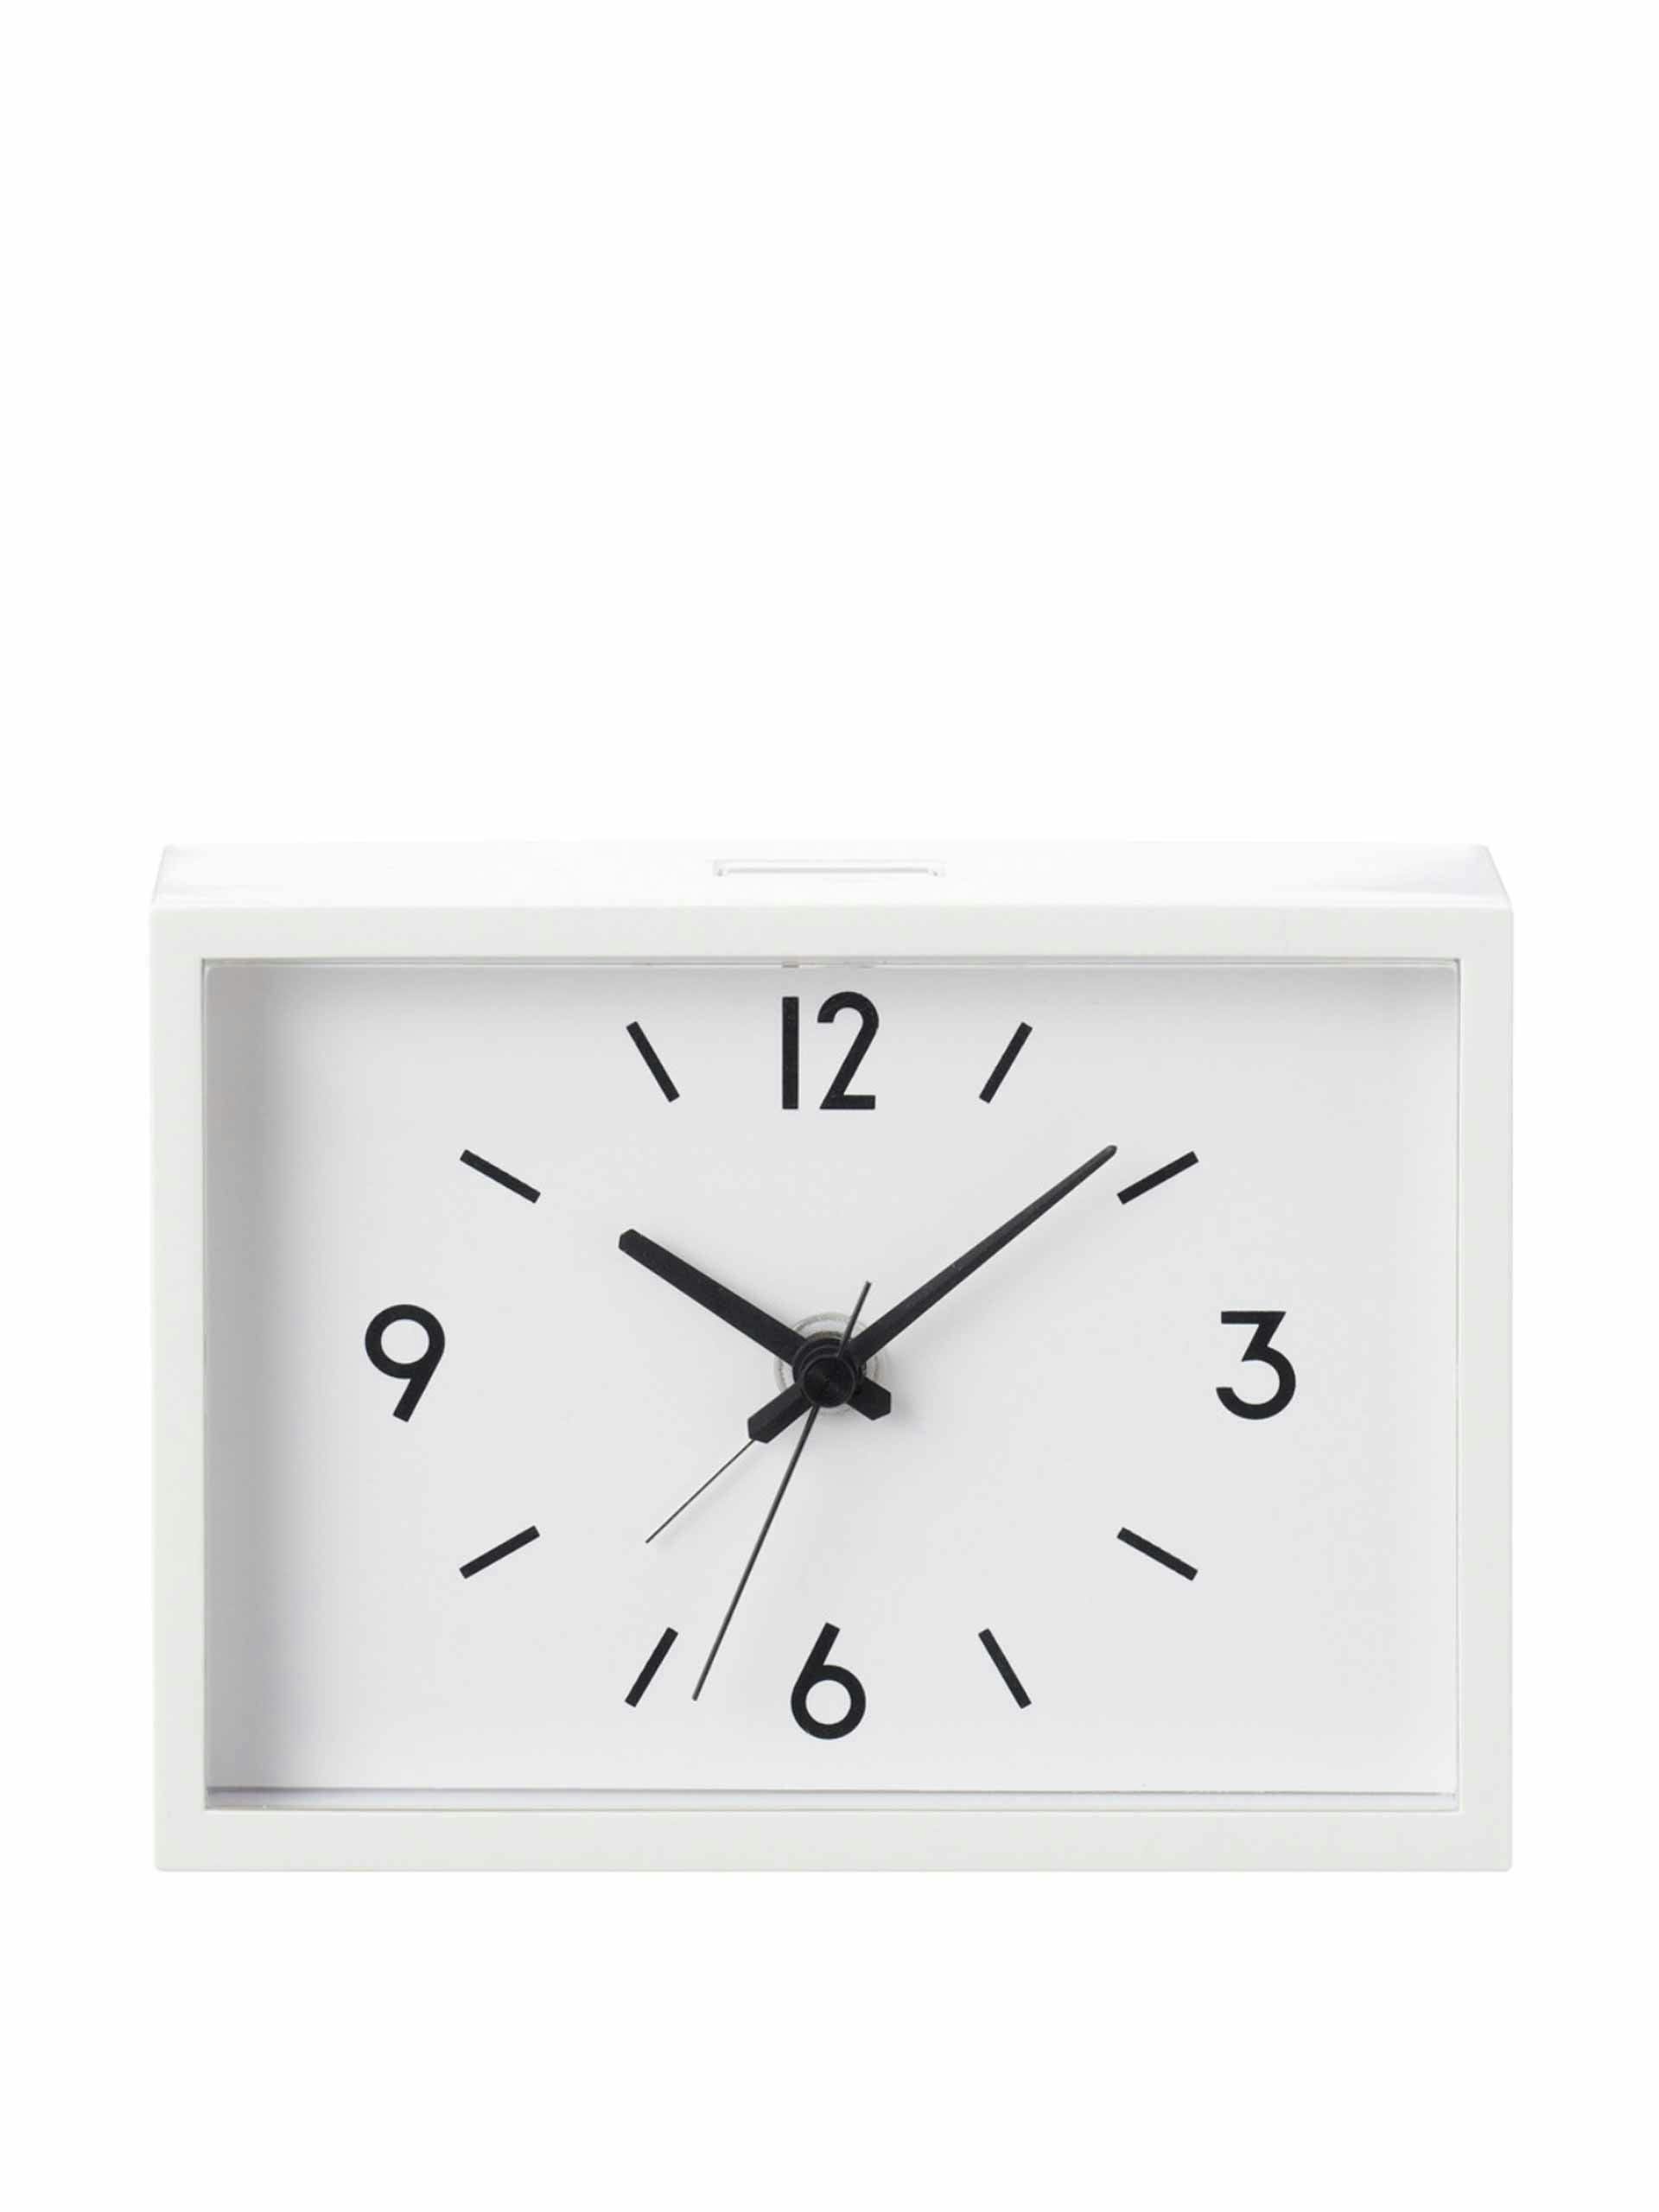 White alarm clock